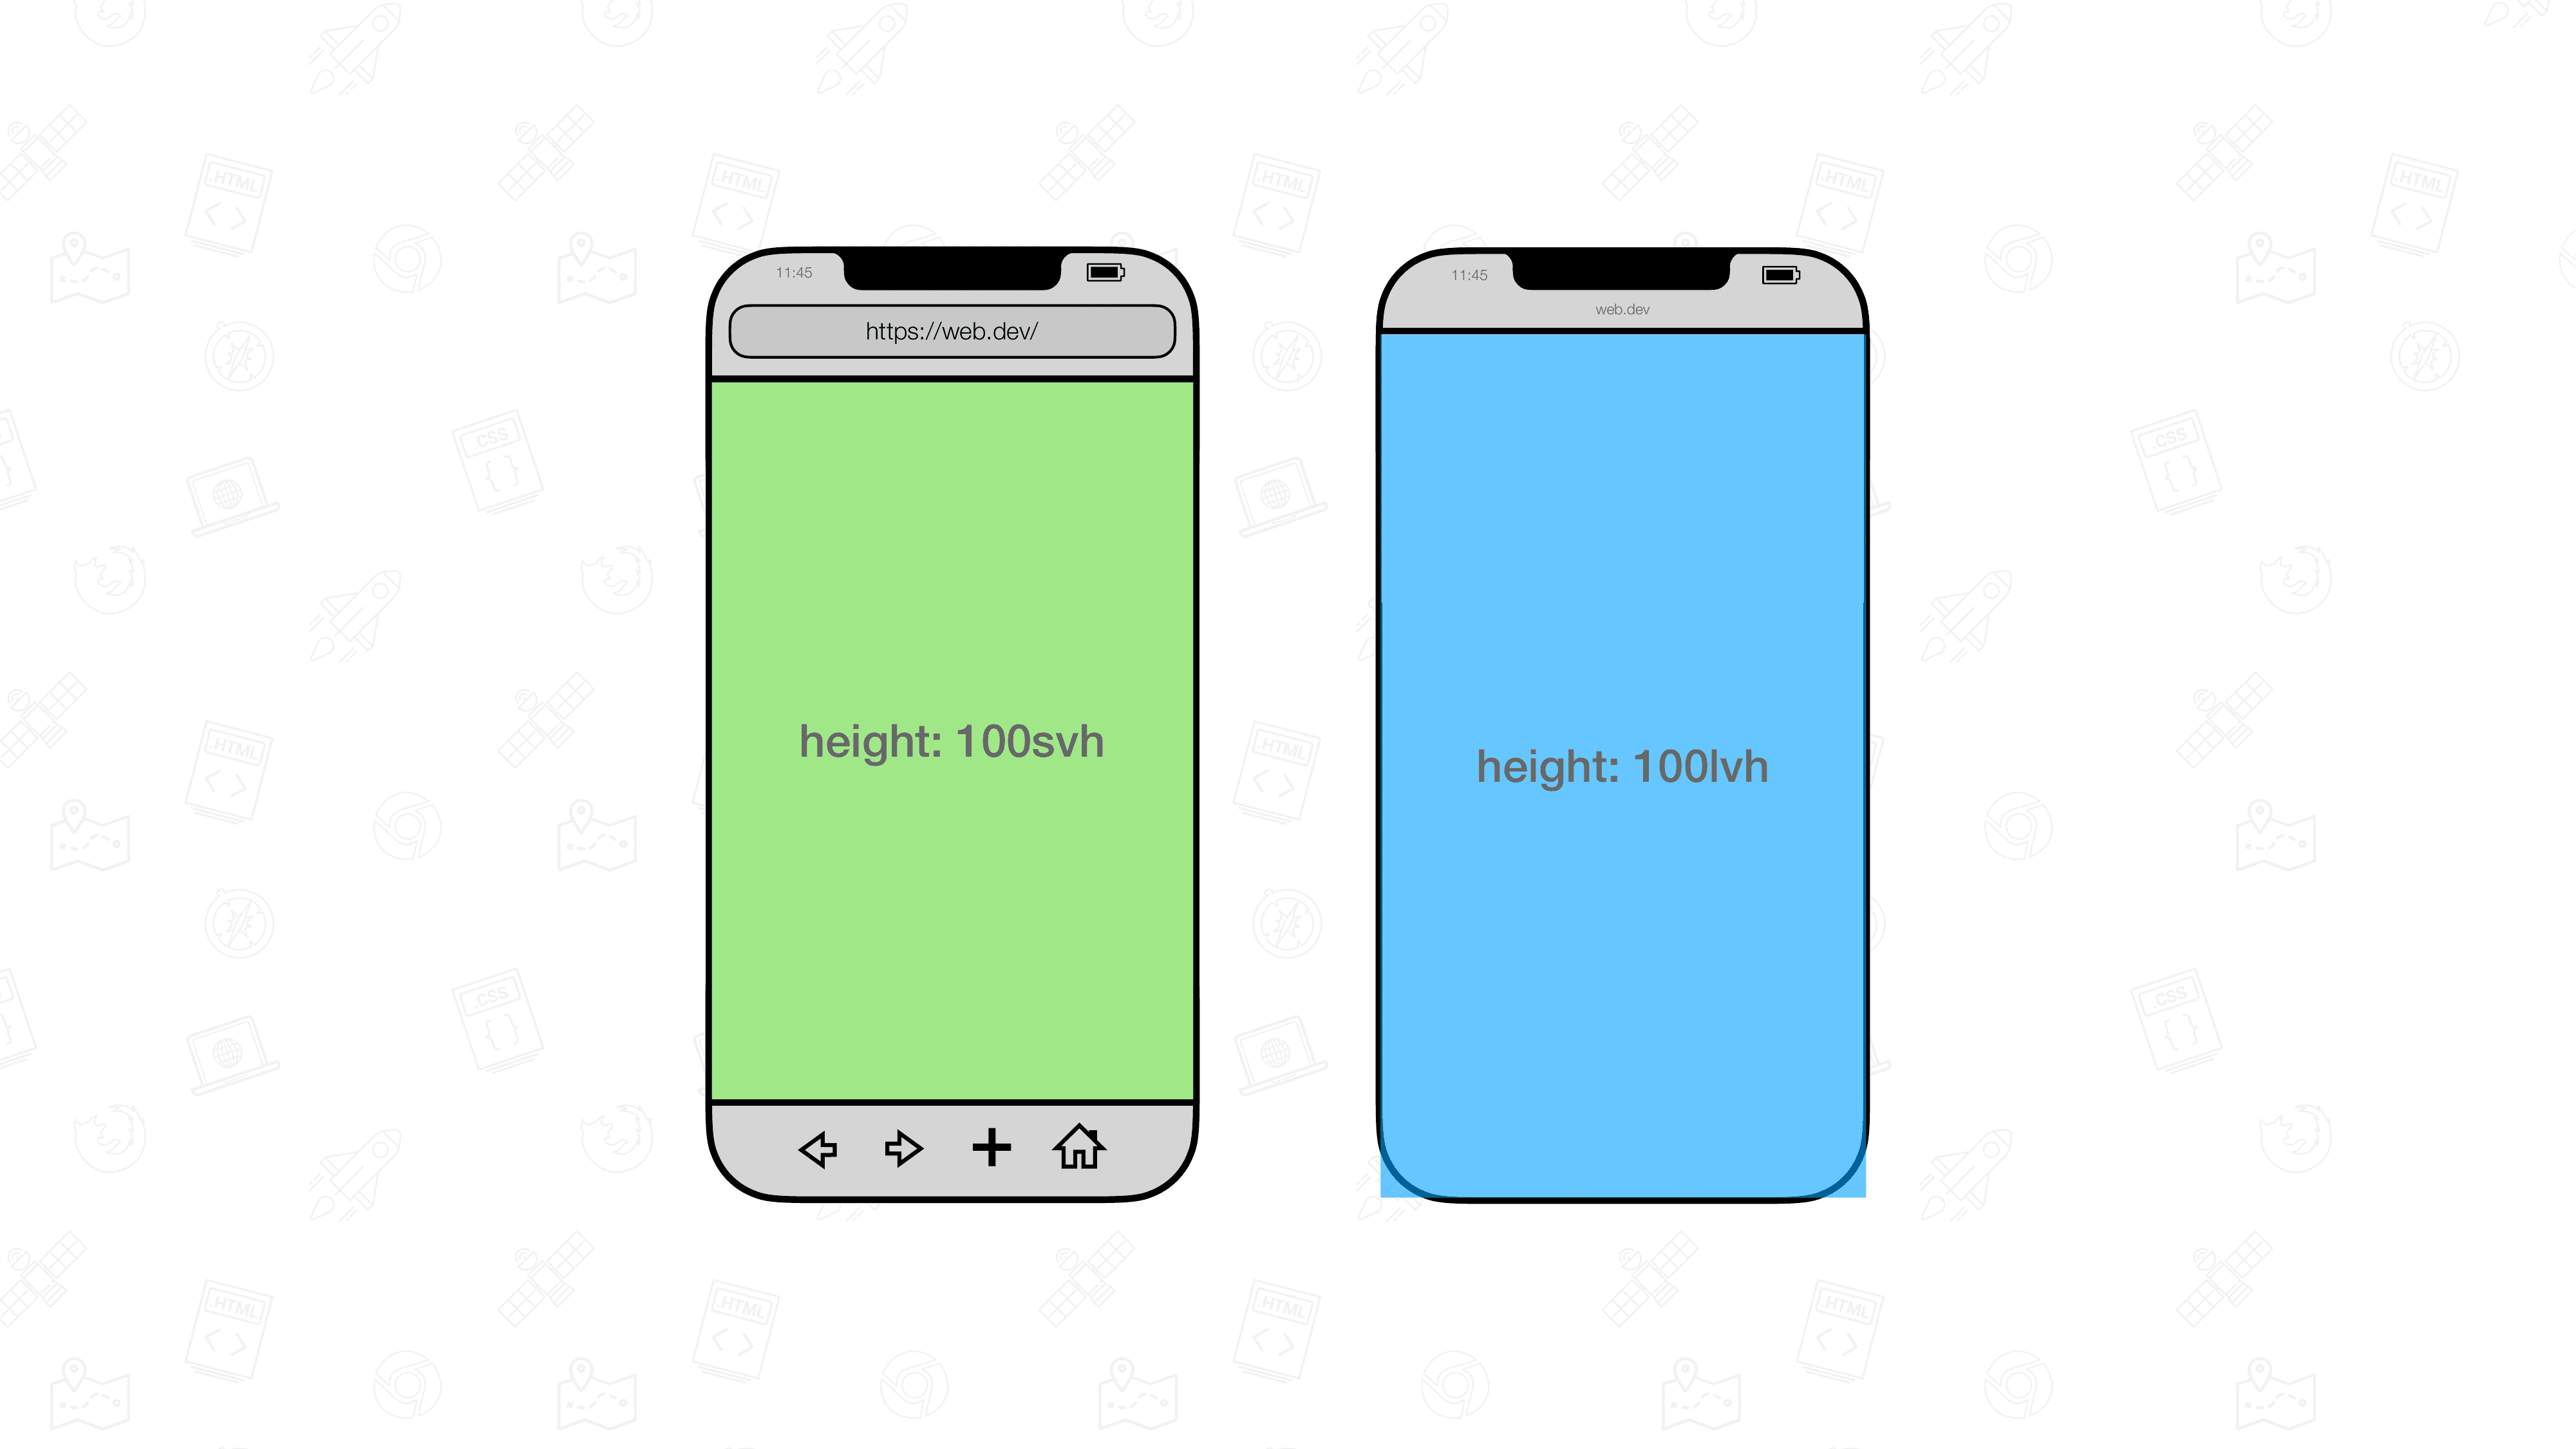 שתי תצוגות חזותיות של דפדפנים לנייד ממוקמות זו לצד זו. לאחד יש אלמנט בגודל 100svh והשני 100lvh.